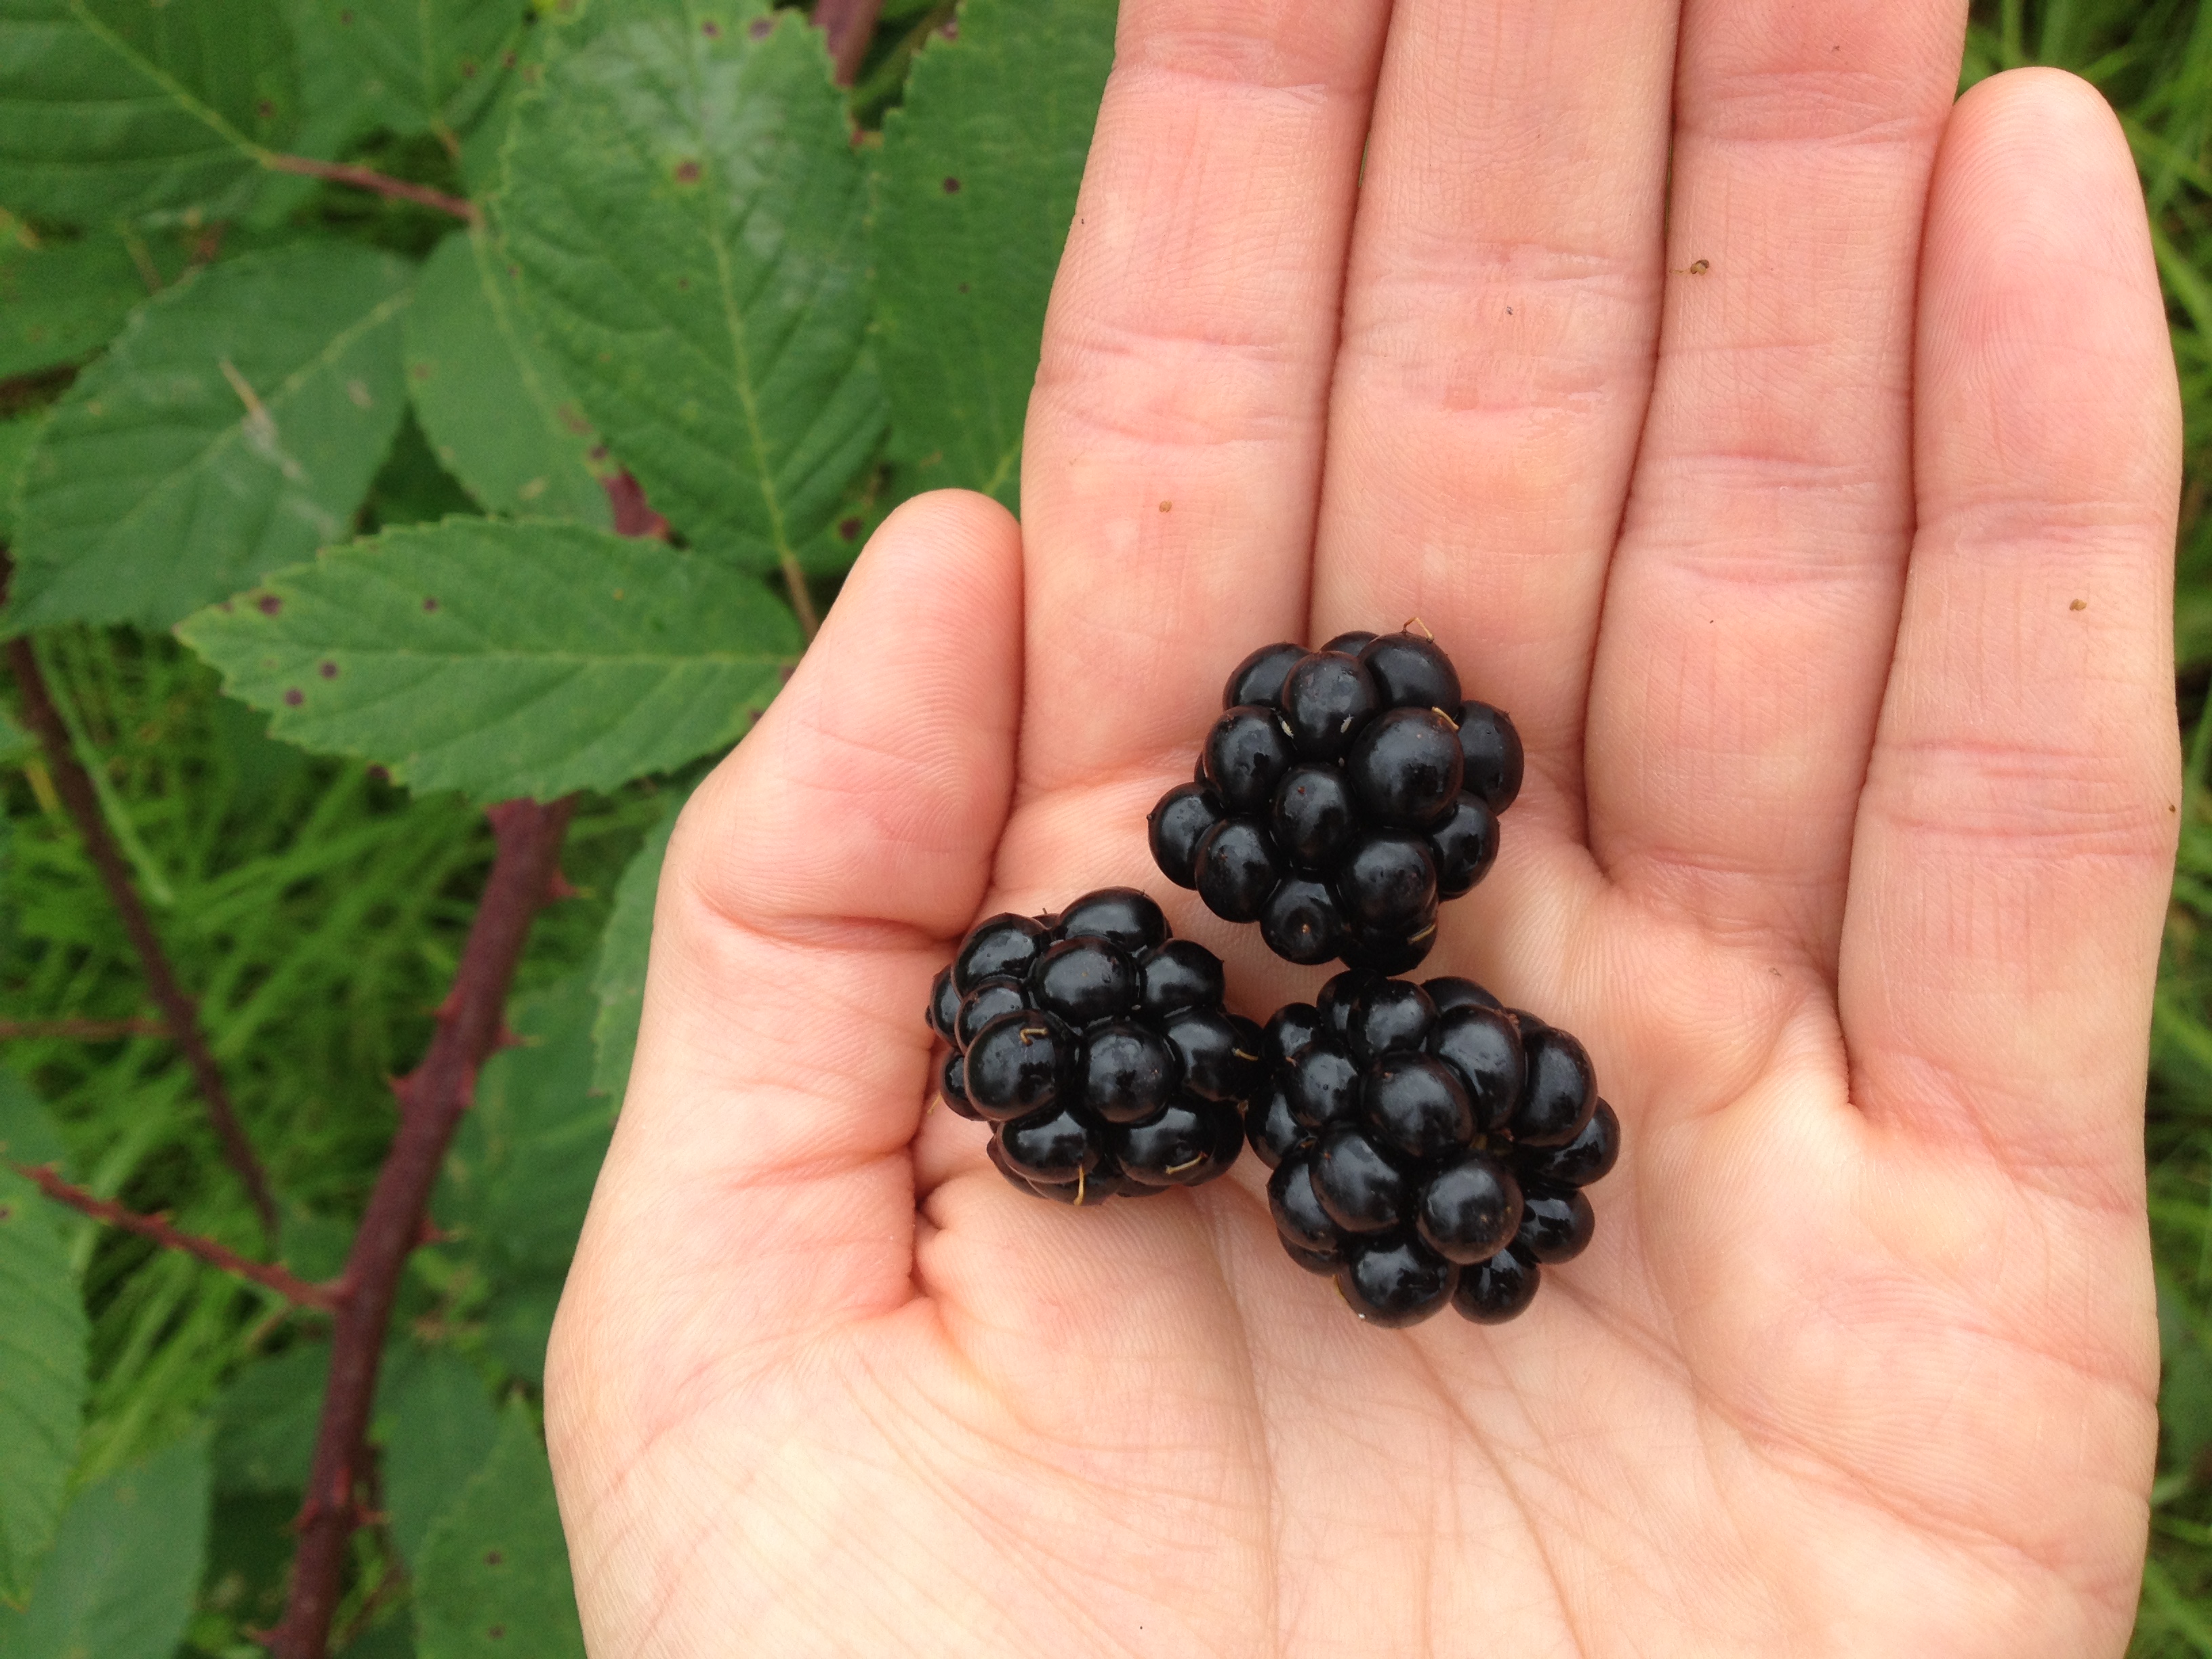 Blackberries: priority weed and local food in equal measures